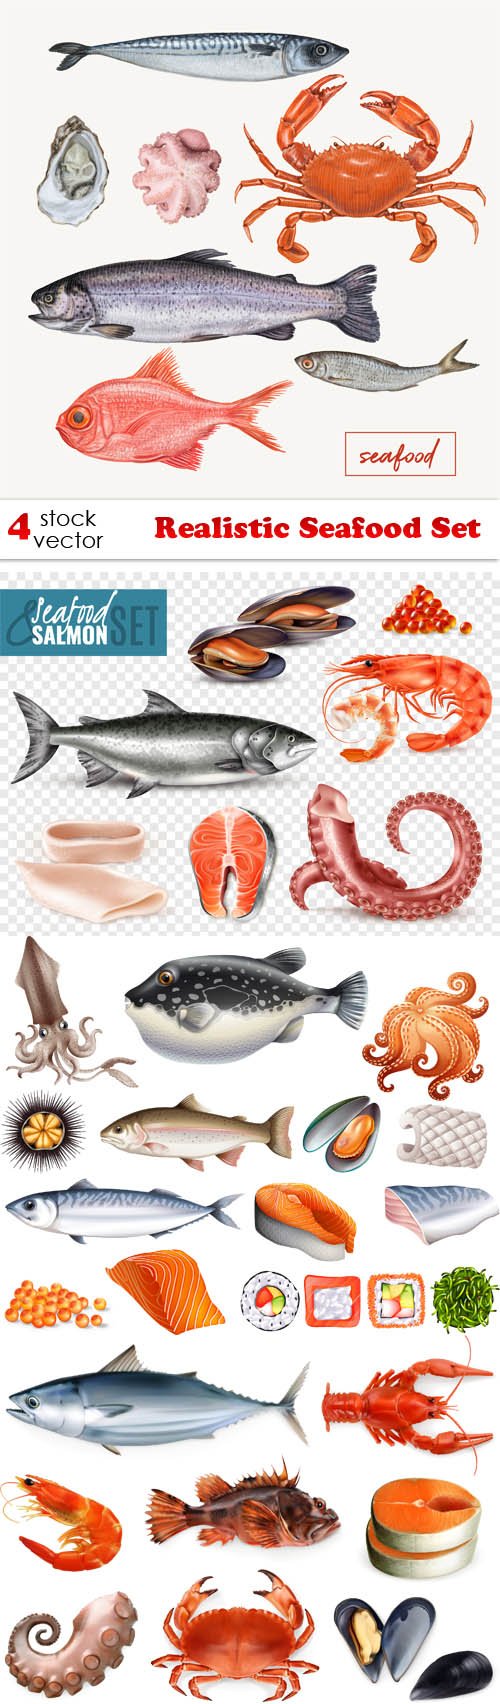 Vectors - Realistic Seafood Set